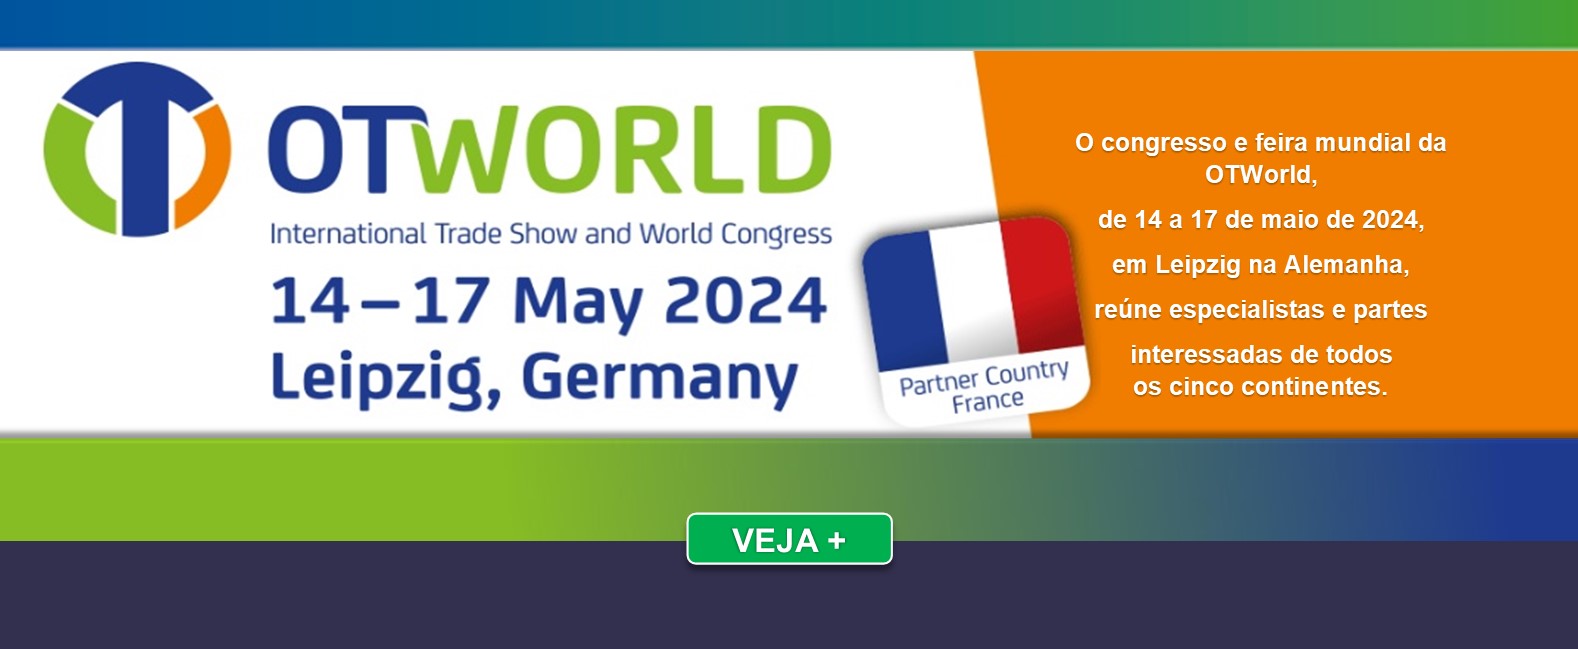 OTWorld, de 14 a 17 de maio de 2024, em Leipzig na Alemanha